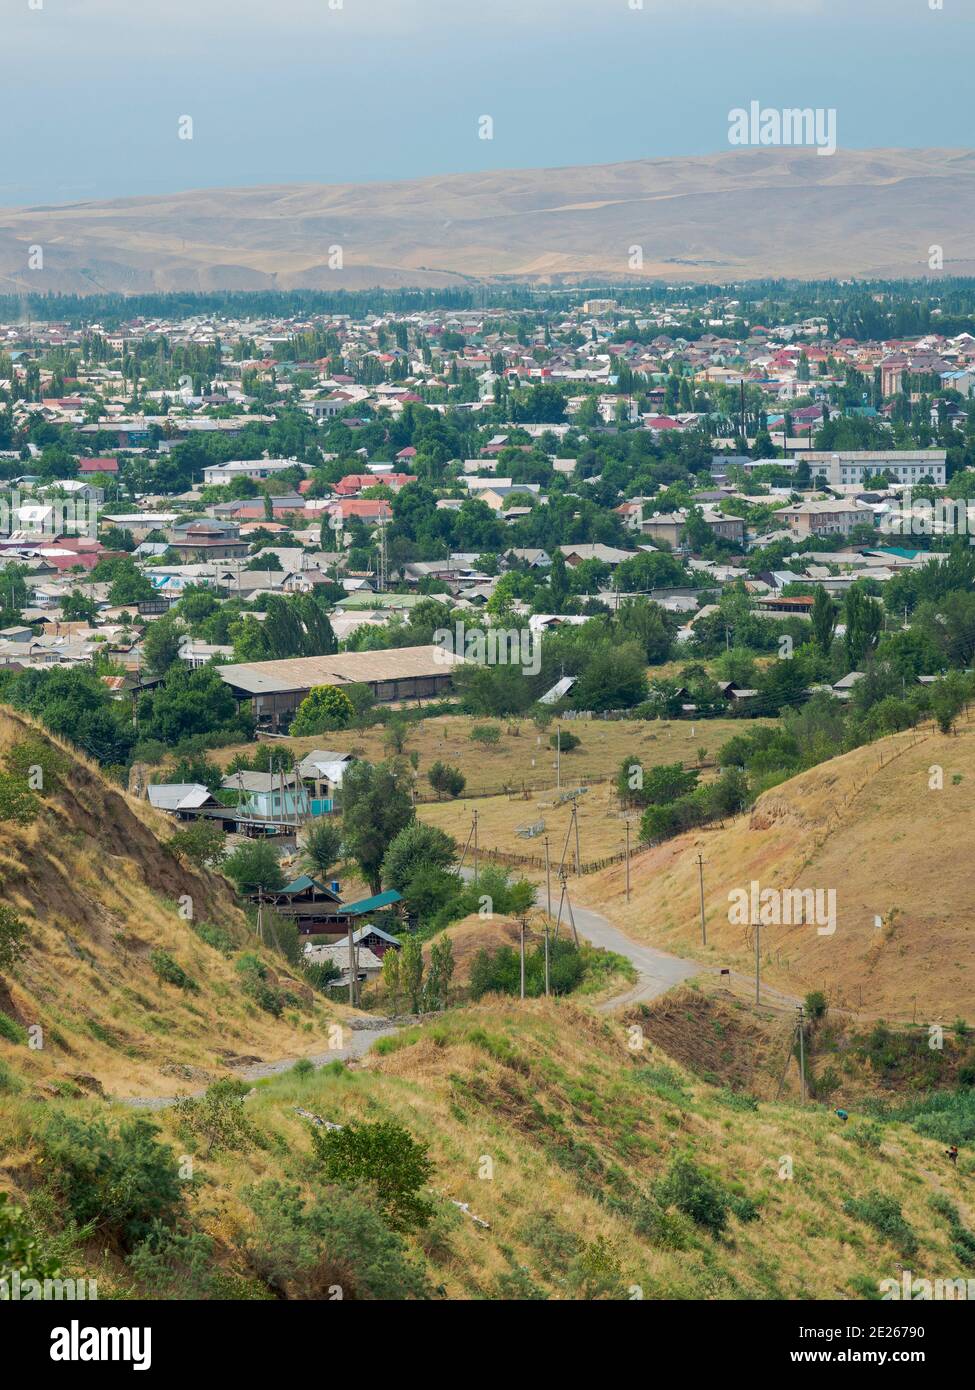 Ville Jalal-Abad (Dzhalal-Abad, Djalal-Abad, Jalalalabad) dans la vallée de Fergana près de la frontière avec l'Ouzbékistan. Asie, Asie centrale, Kirghizistan Banque D'Images